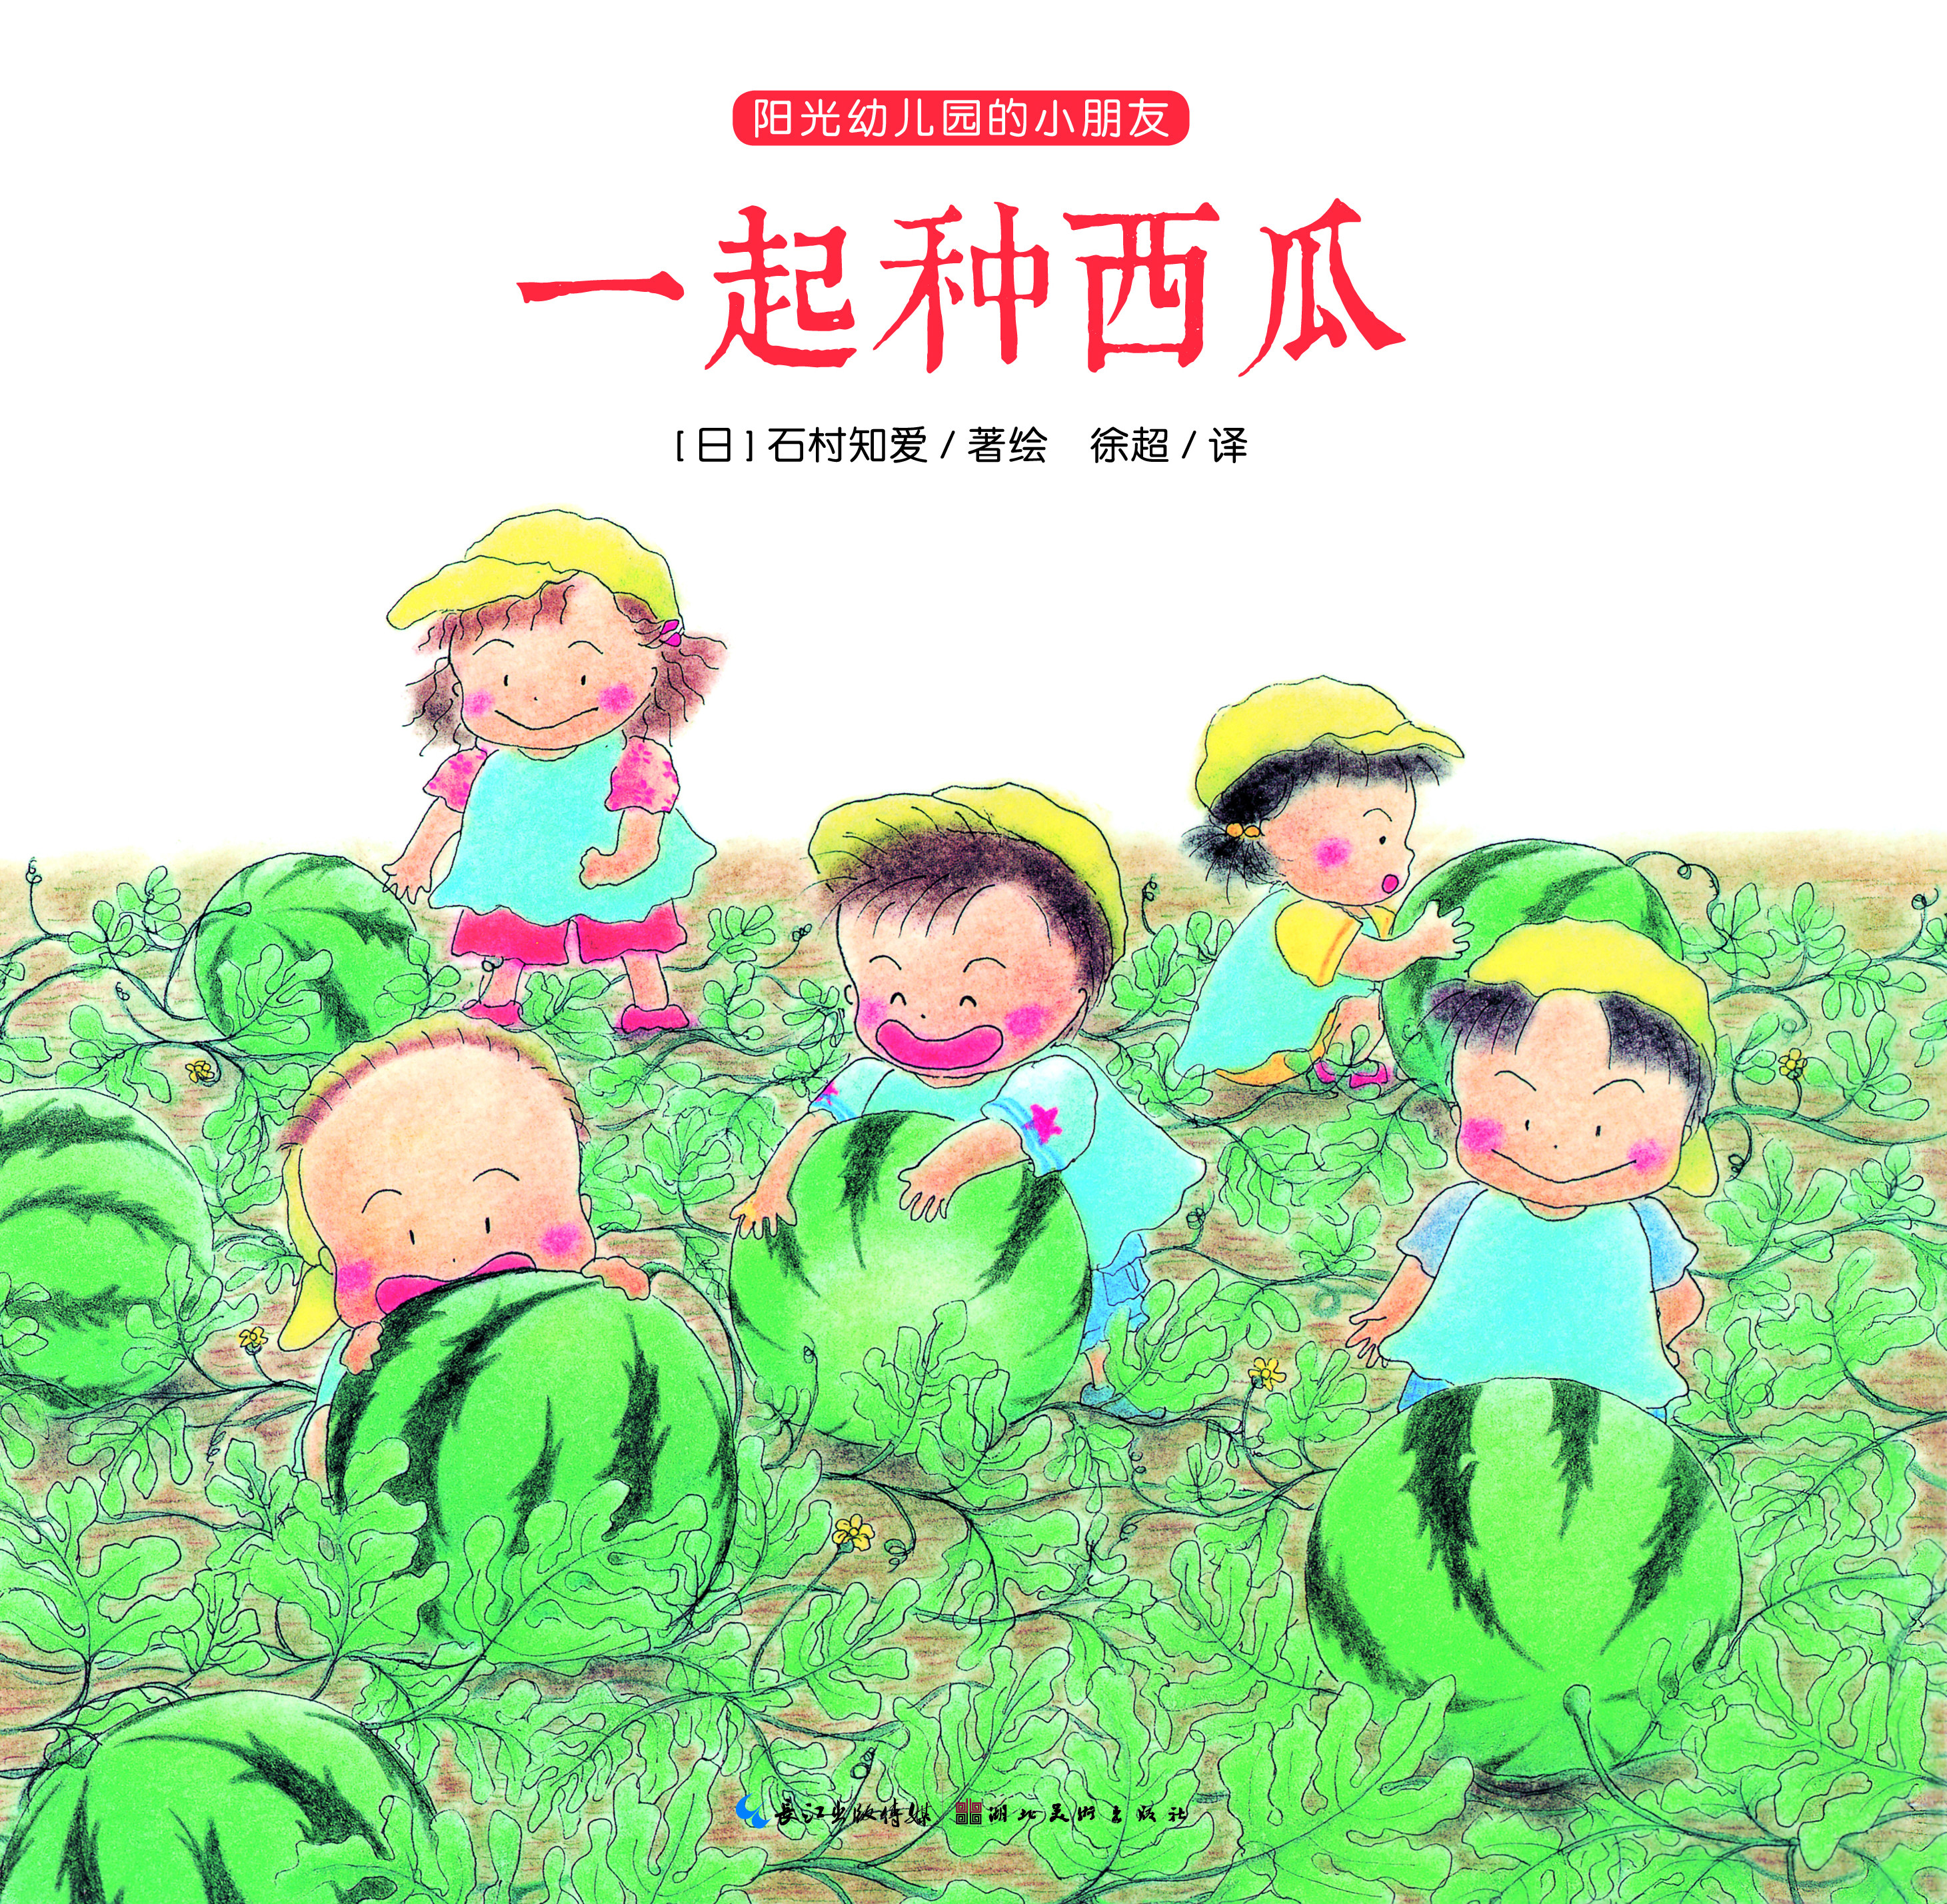 【大图】《阳光幼儿园的小朋友》之一起种西瓜